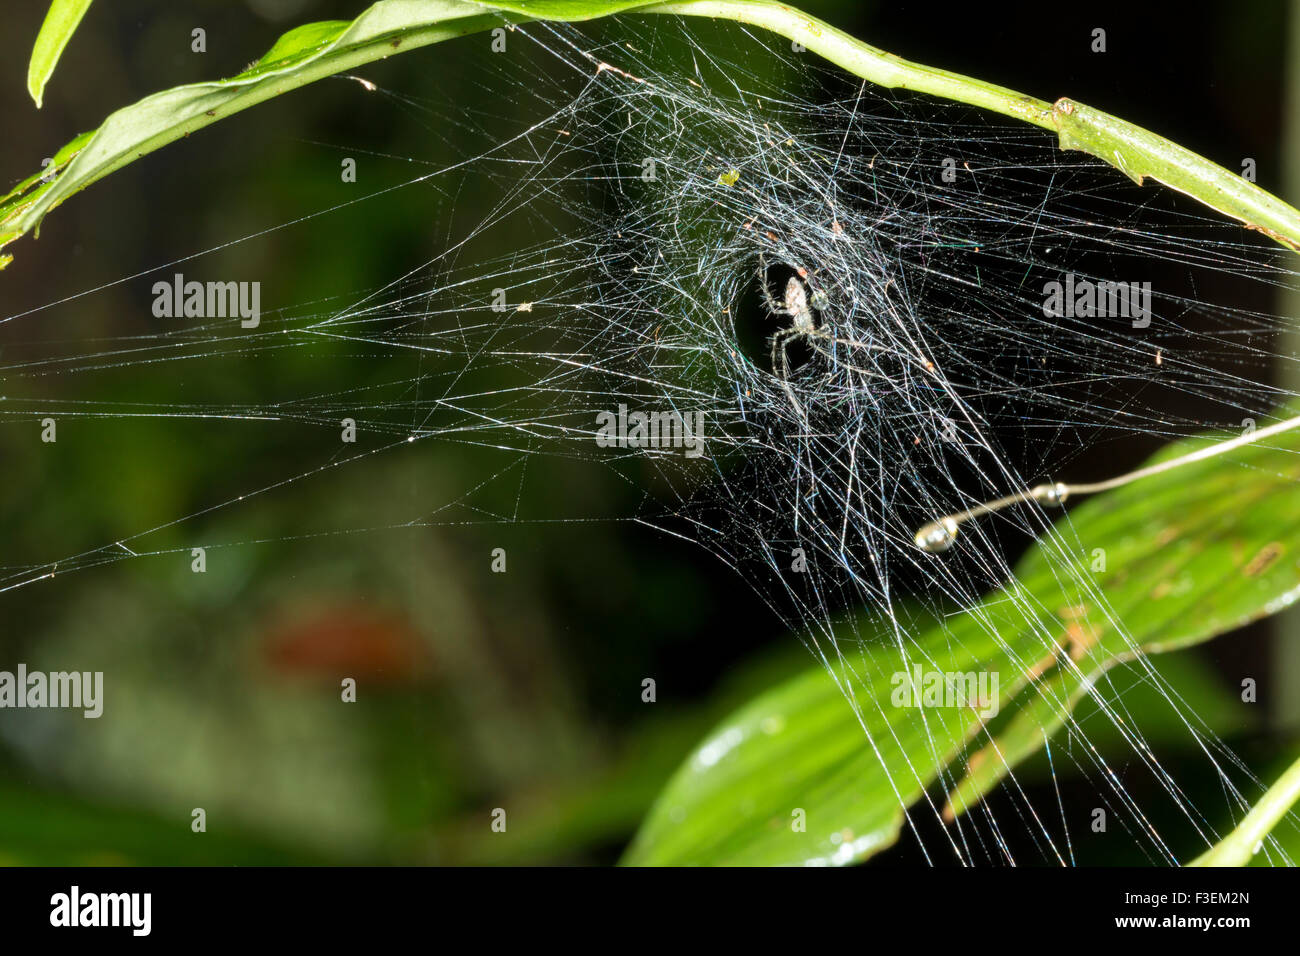 Araña en una web suspendida en virtud de una hoja en el sotobosque de la selva, Ecuador Foto de stock